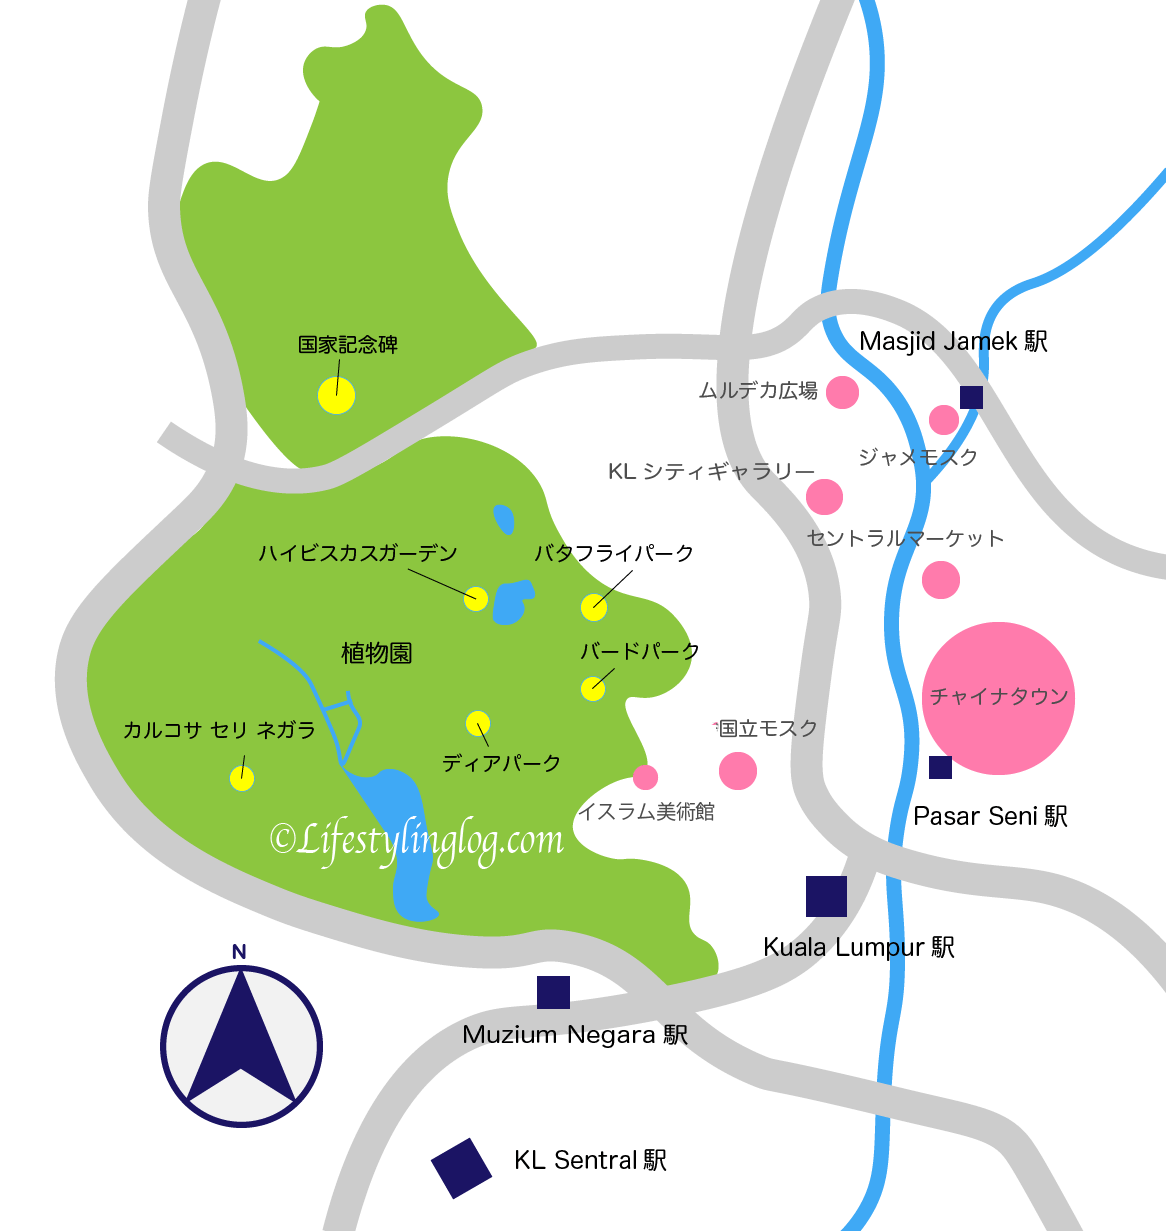 クアラルンプール植物園のイメージマップ